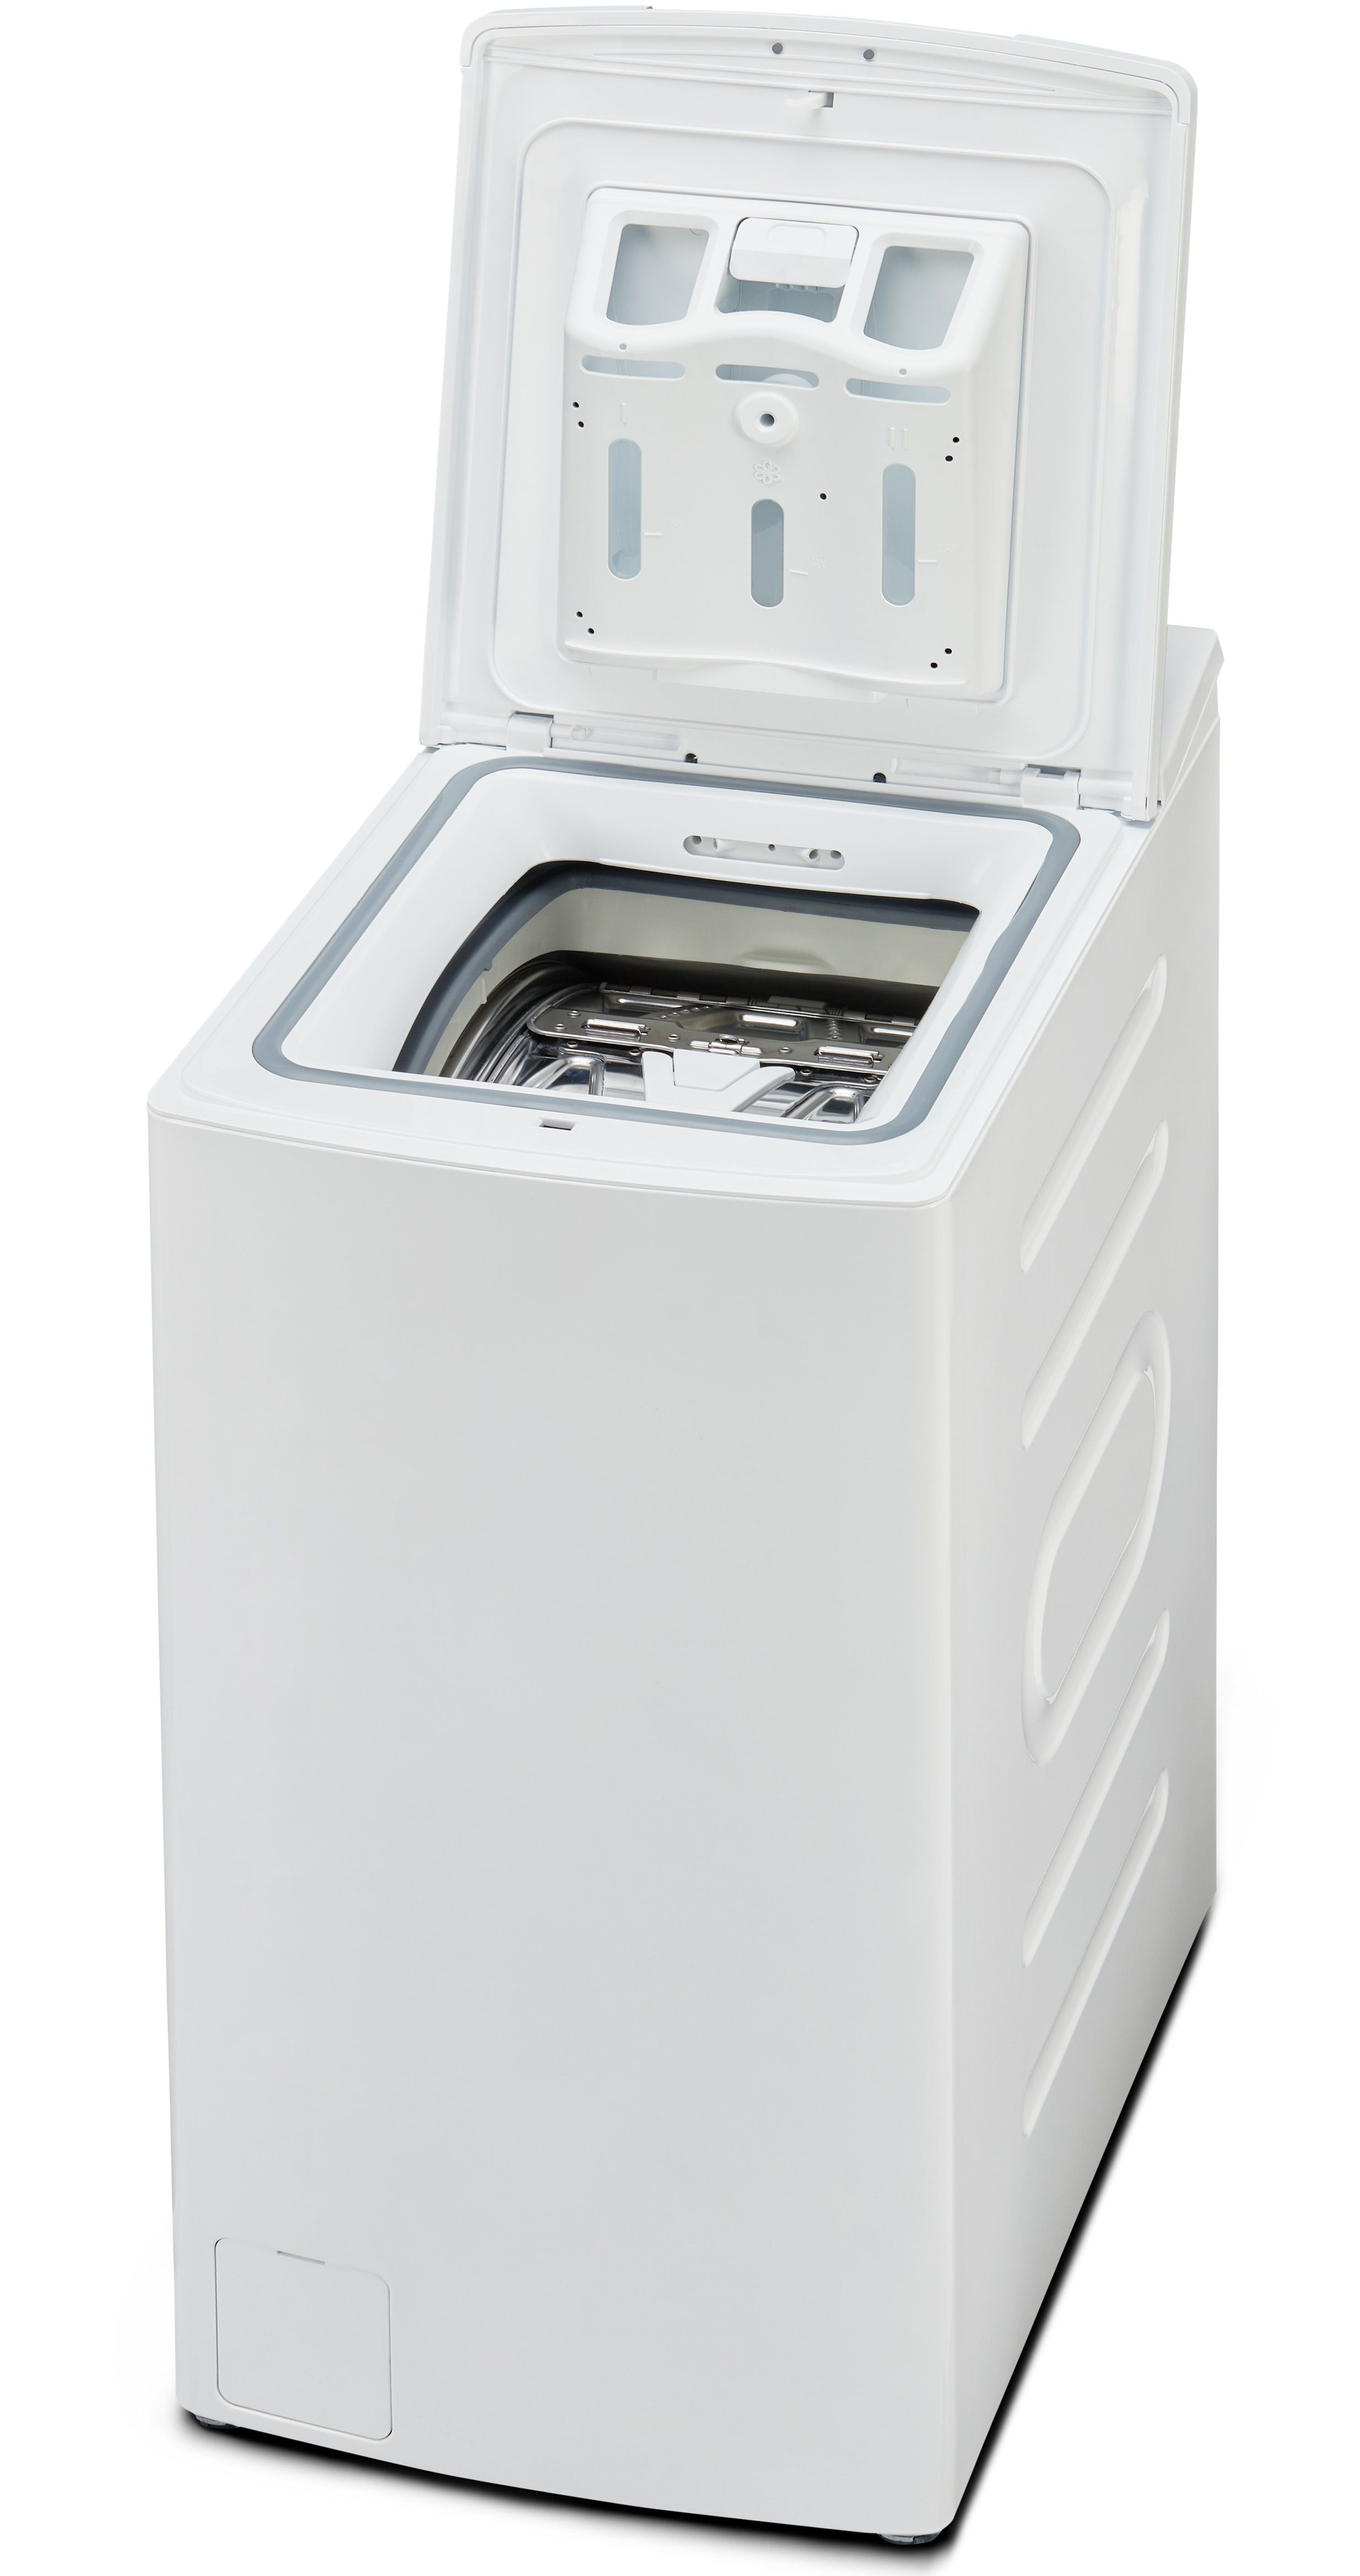 Midea Waschmaschine Serie Opener, Door, 1200 TW Toplader Trommelreinigung, U/min, 5.72i kg, AquaStop, 5 Mein 7,5 diN, Soft XL Programm